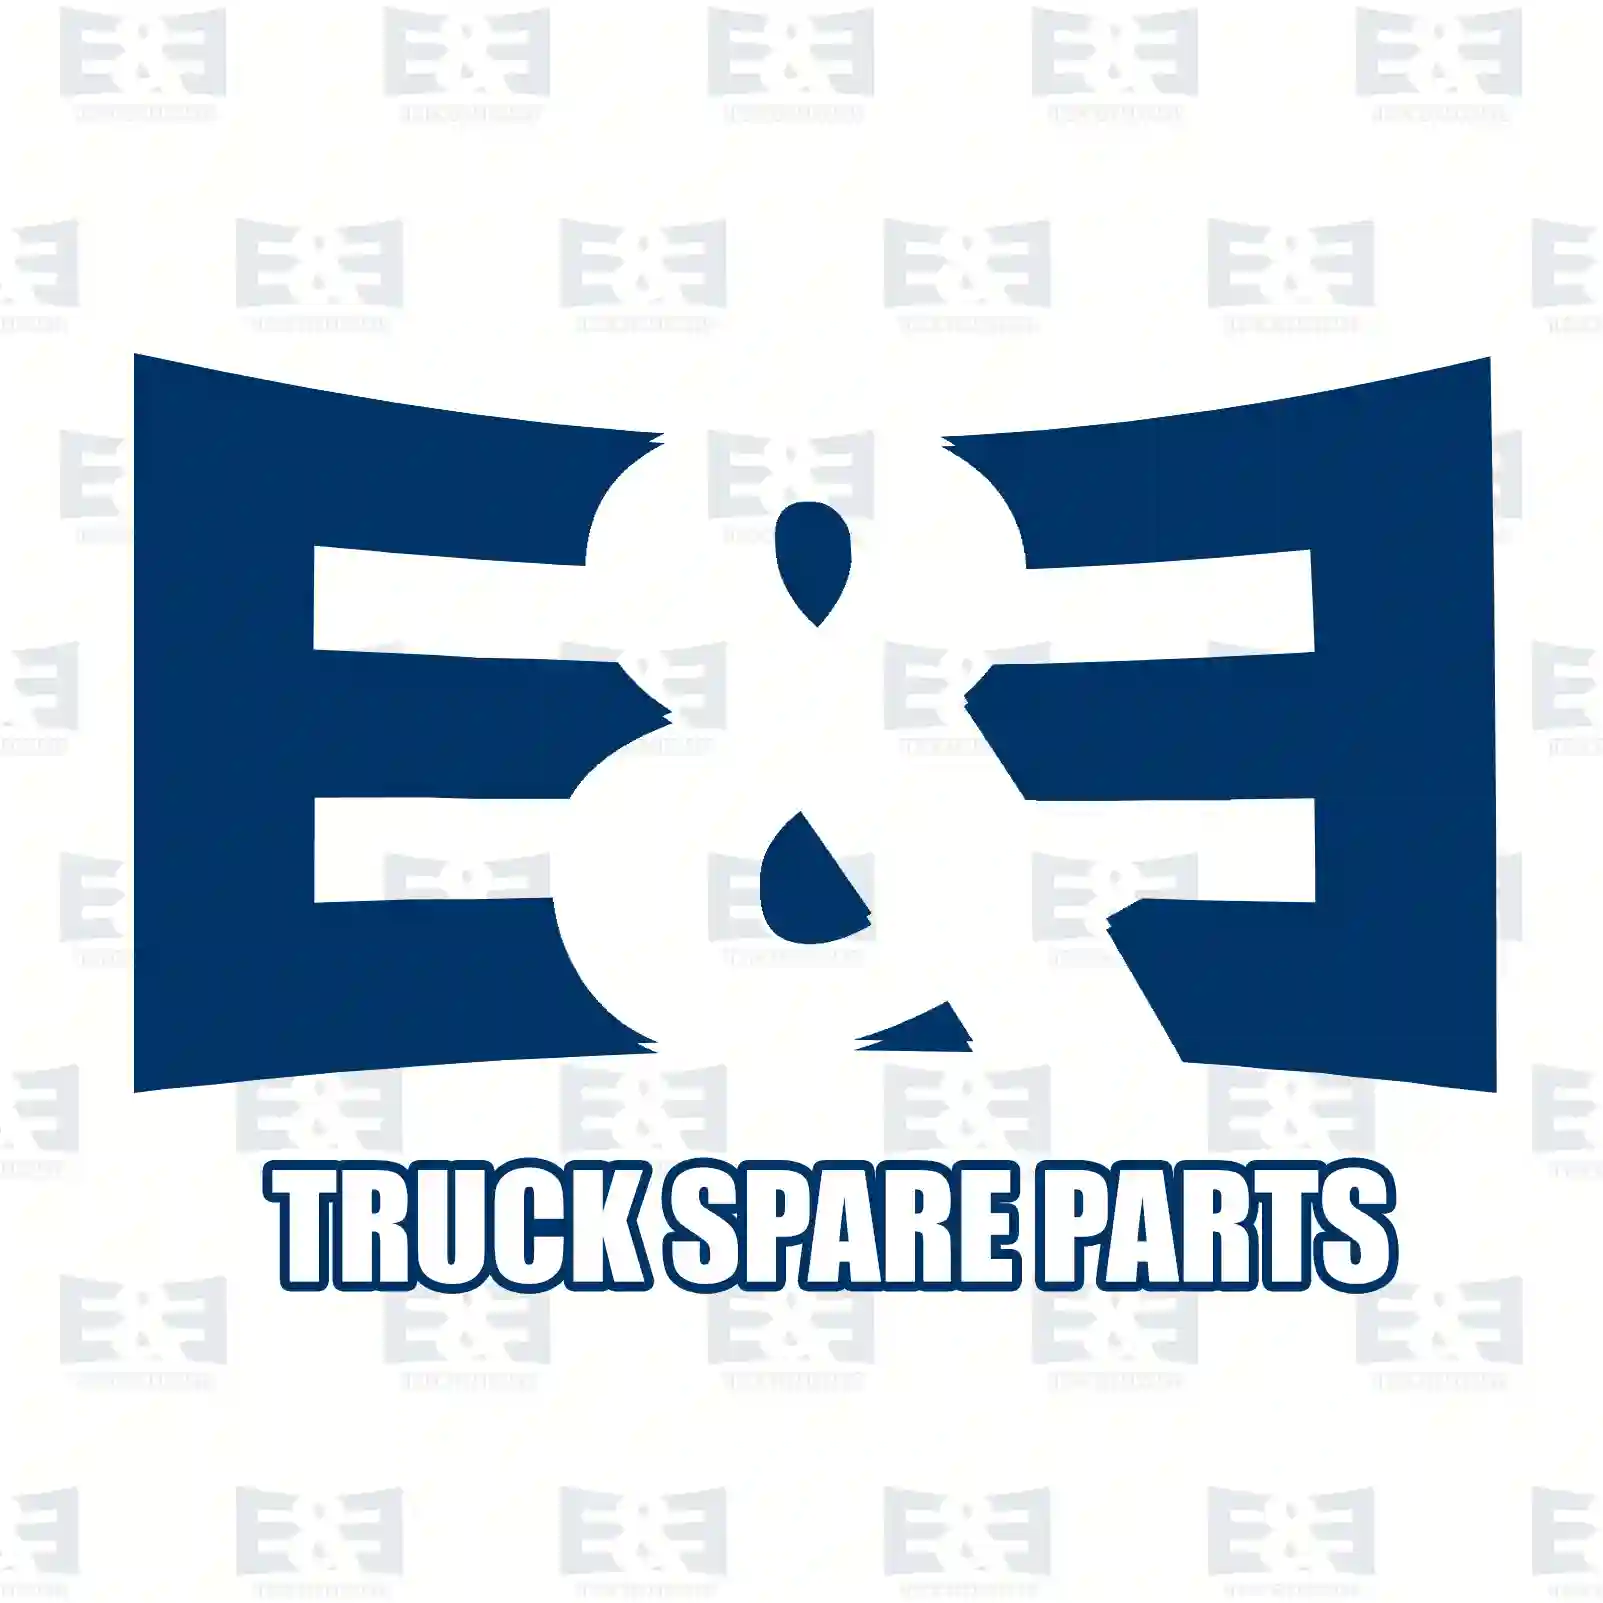 Oil seal, 2E2276095, 1357776, , ||  2E2276095 E&E Truck Spare Parts | Truck Spare Parts, Auotomotive Spare Parts Oil seal, 2E2276095, 1357776, , ||  2E2276095 E&E Truck Spare Parts | Truck Spare Parts, Auotomotive Spare Parts